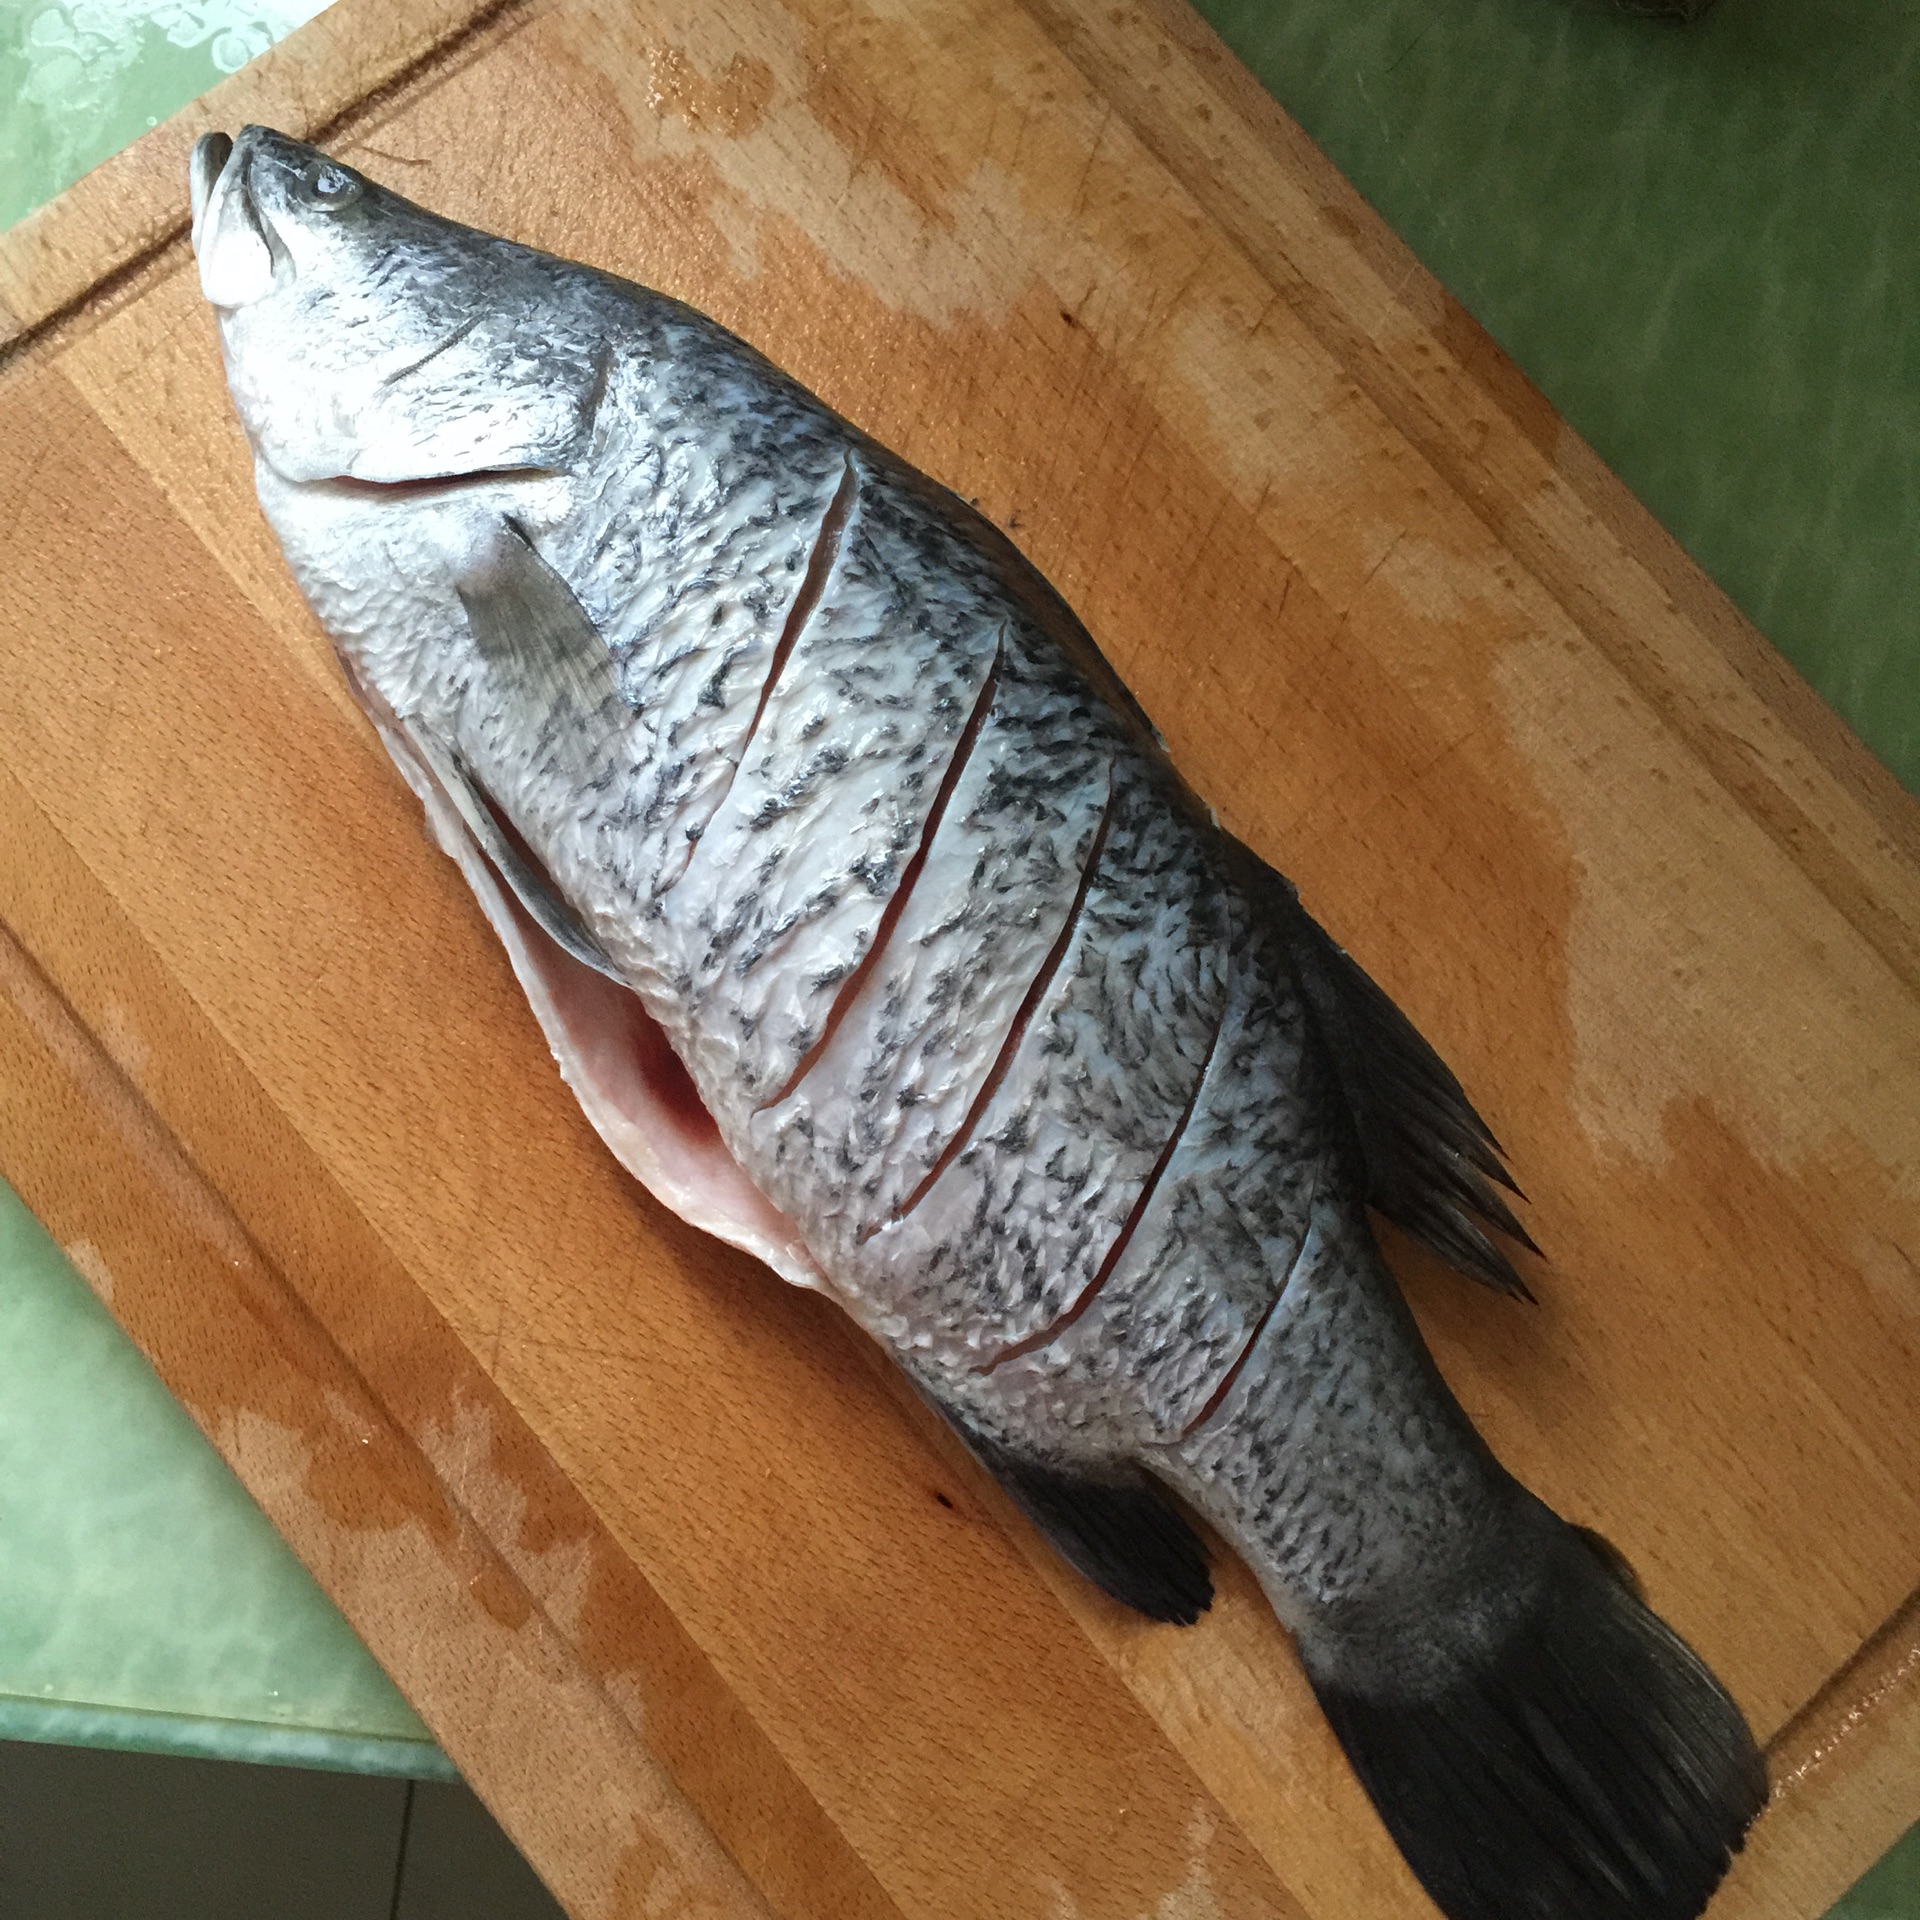 煎焖海桂鱼